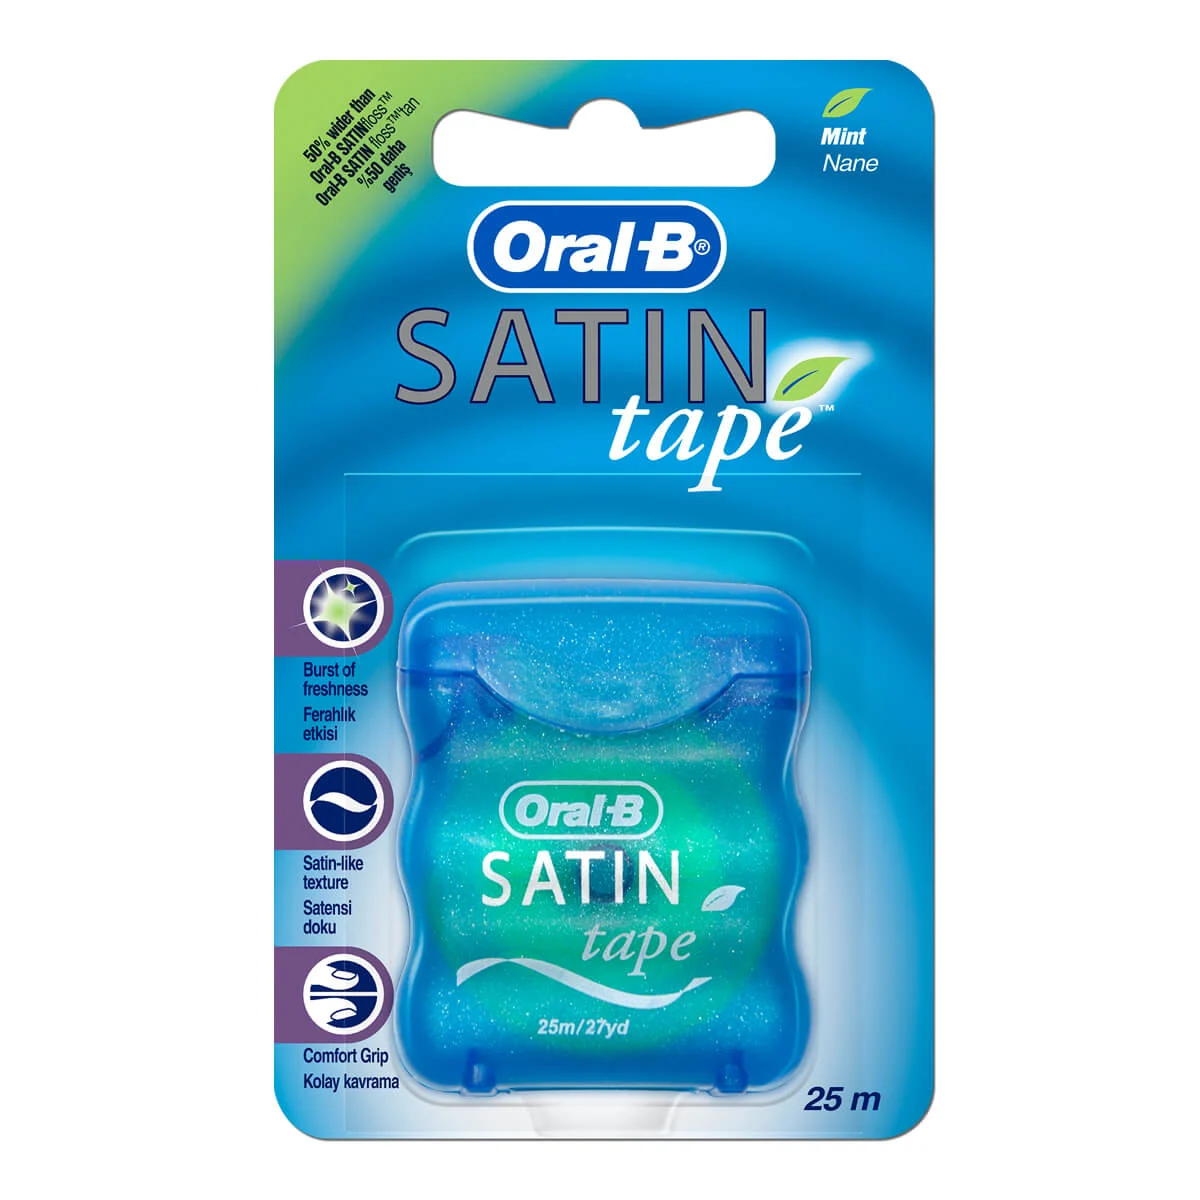 Sociedad Año Mirar furtivamente Oral-B Satin Tape Mint | Oral-B